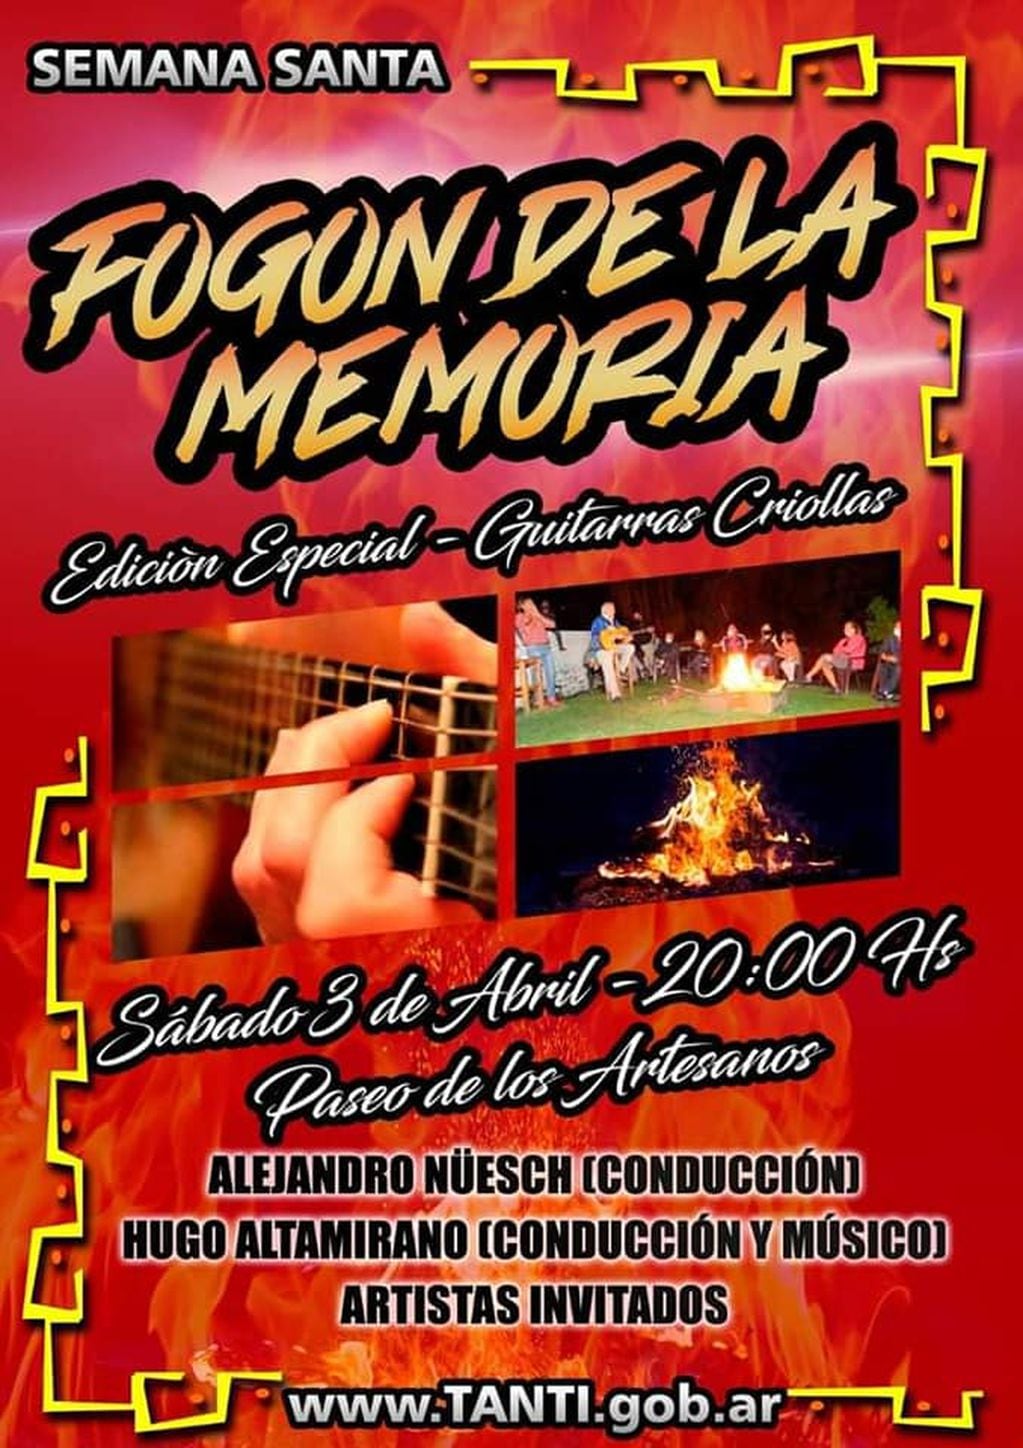 "Fogón de la Memoria" en Tanti. Semana Santa 2021.